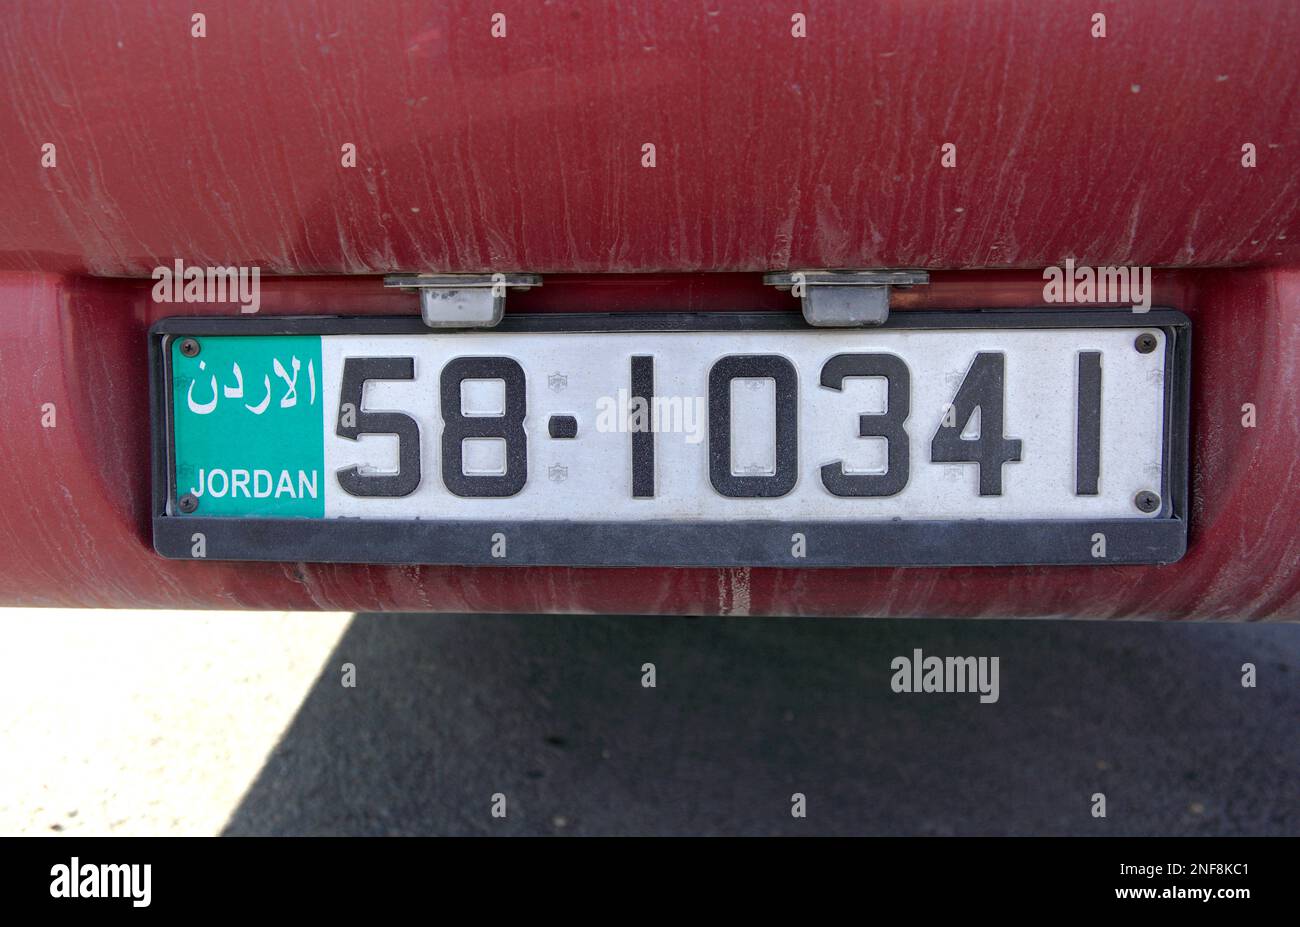 Nummernschild, Kfz-Zulassung, Autoschild in Jordanien / car